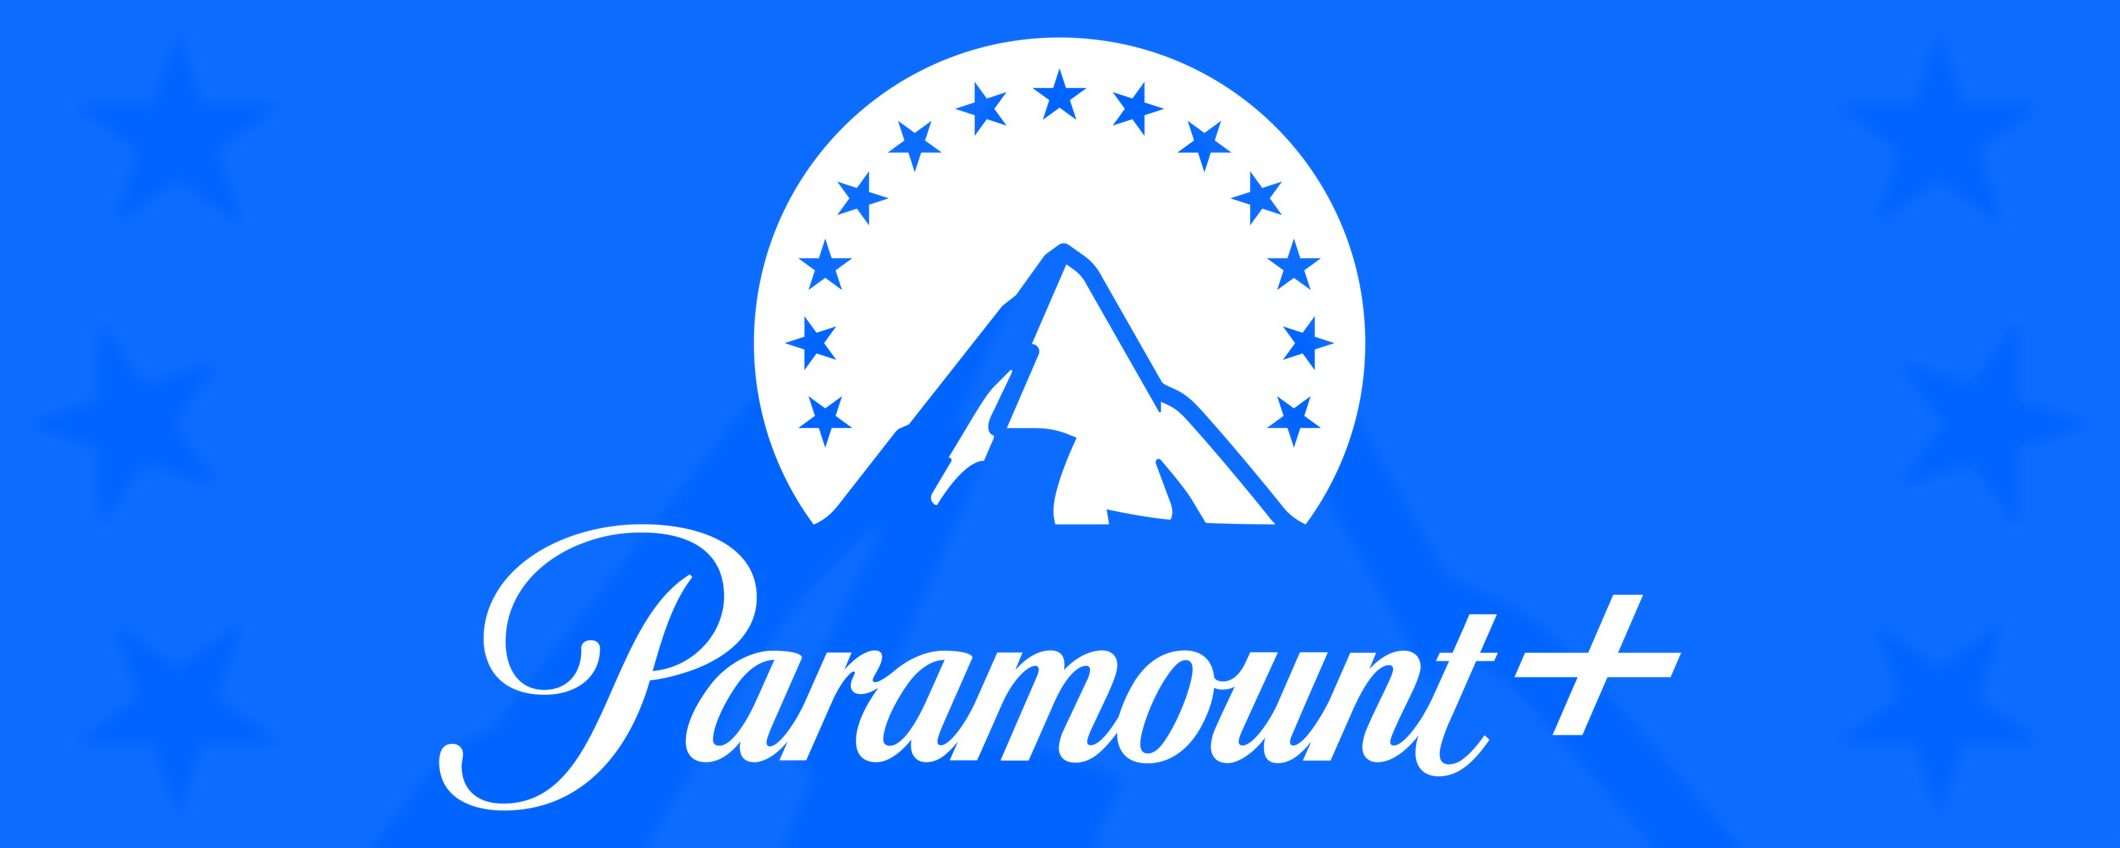 Paramount+: data di uscita e prezzo in Italia